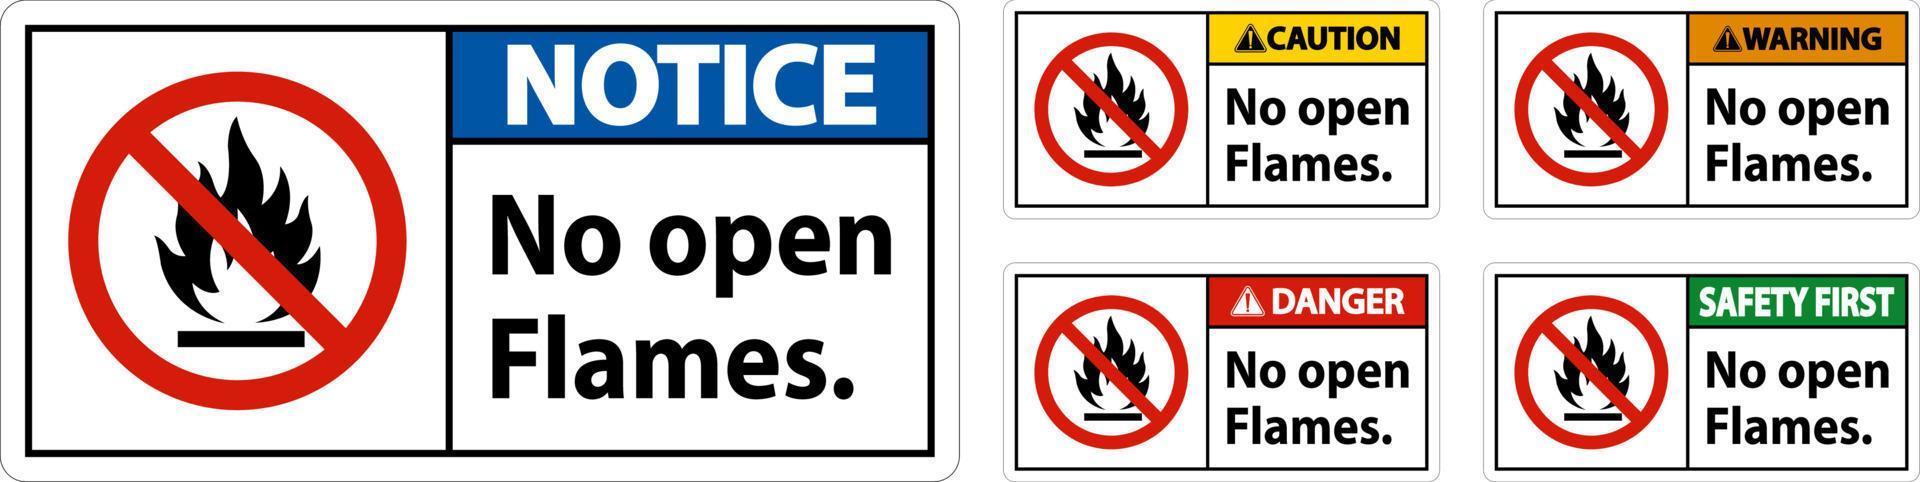 Nee Open vlammen etiket teken Aan wit achtergrond vector